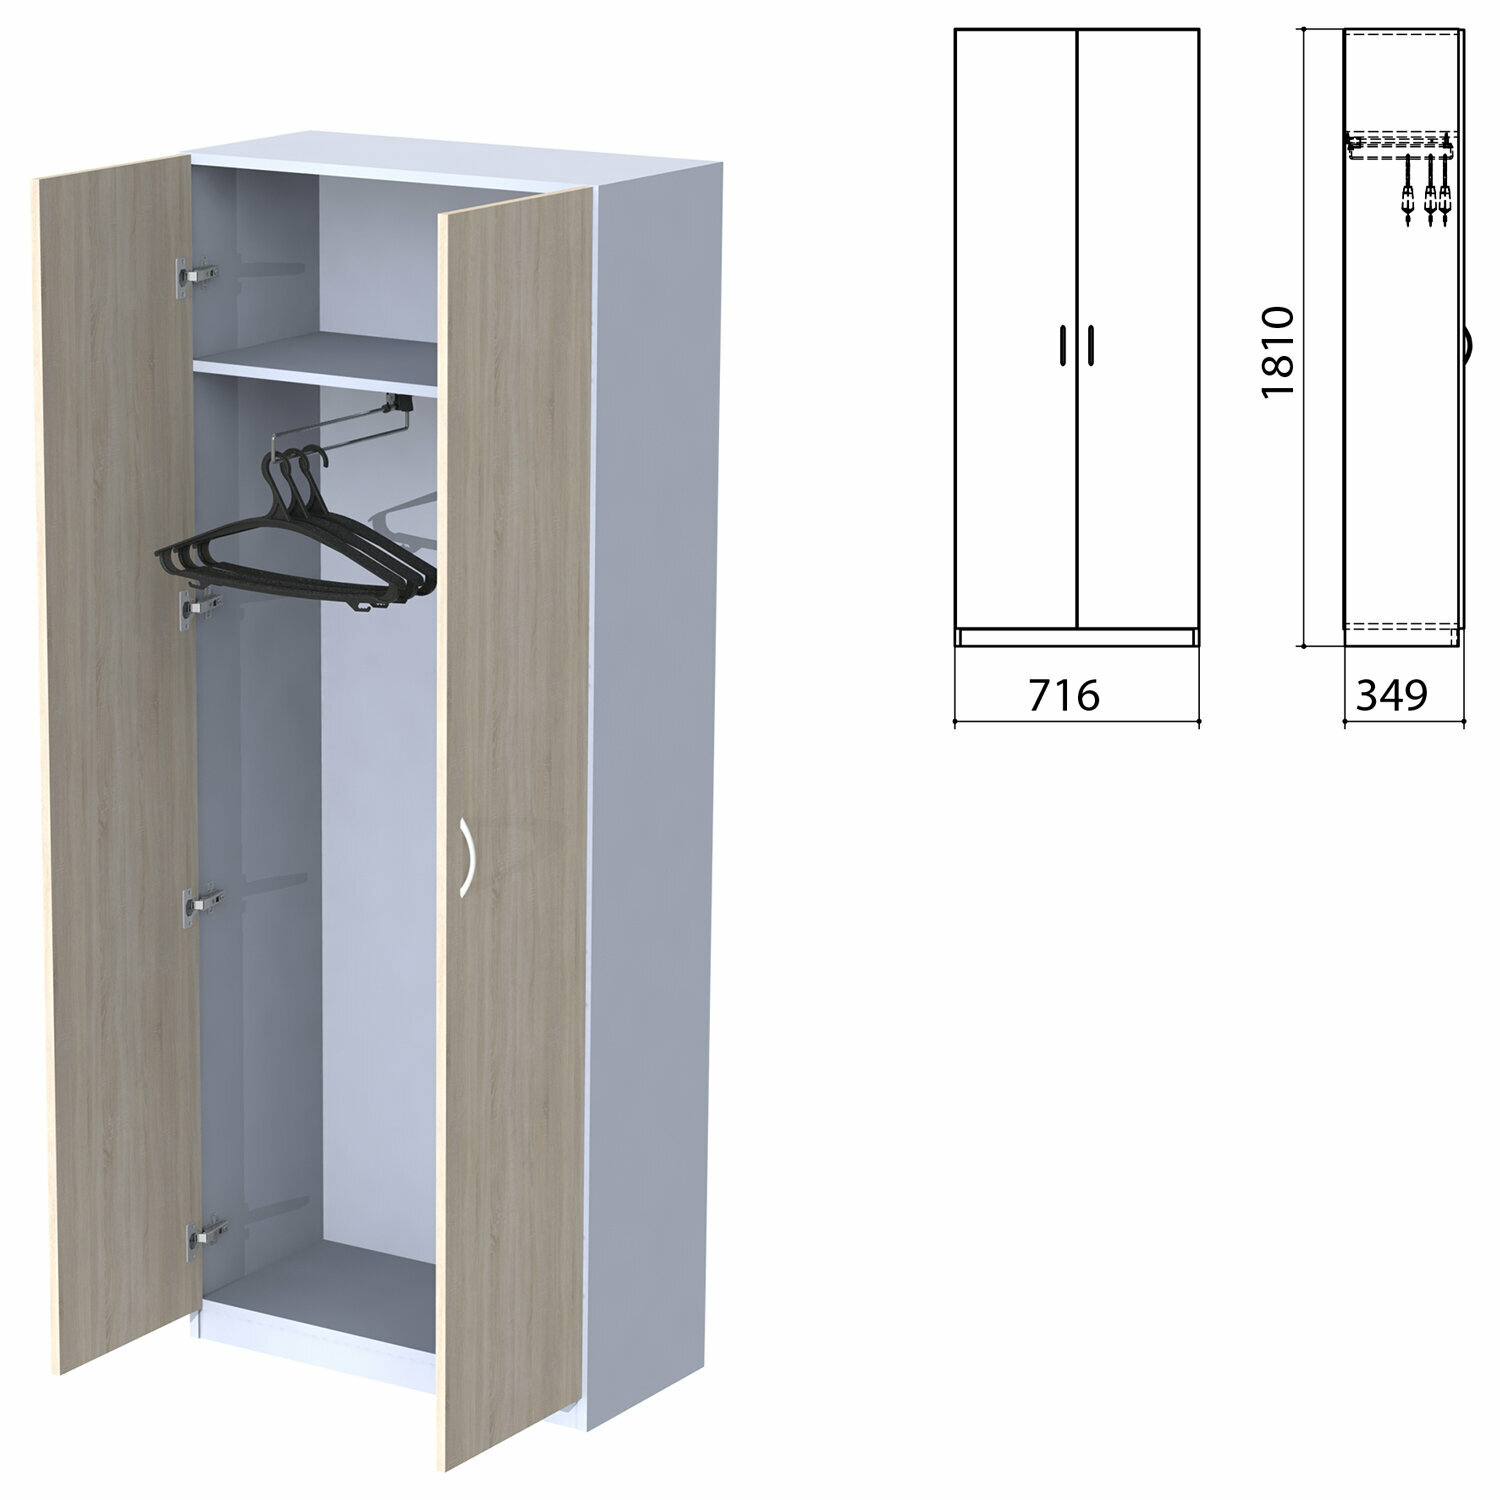 Шкаф для одежды «Бюджет», 716×349×1810 мм, дуб сонома (комплект)